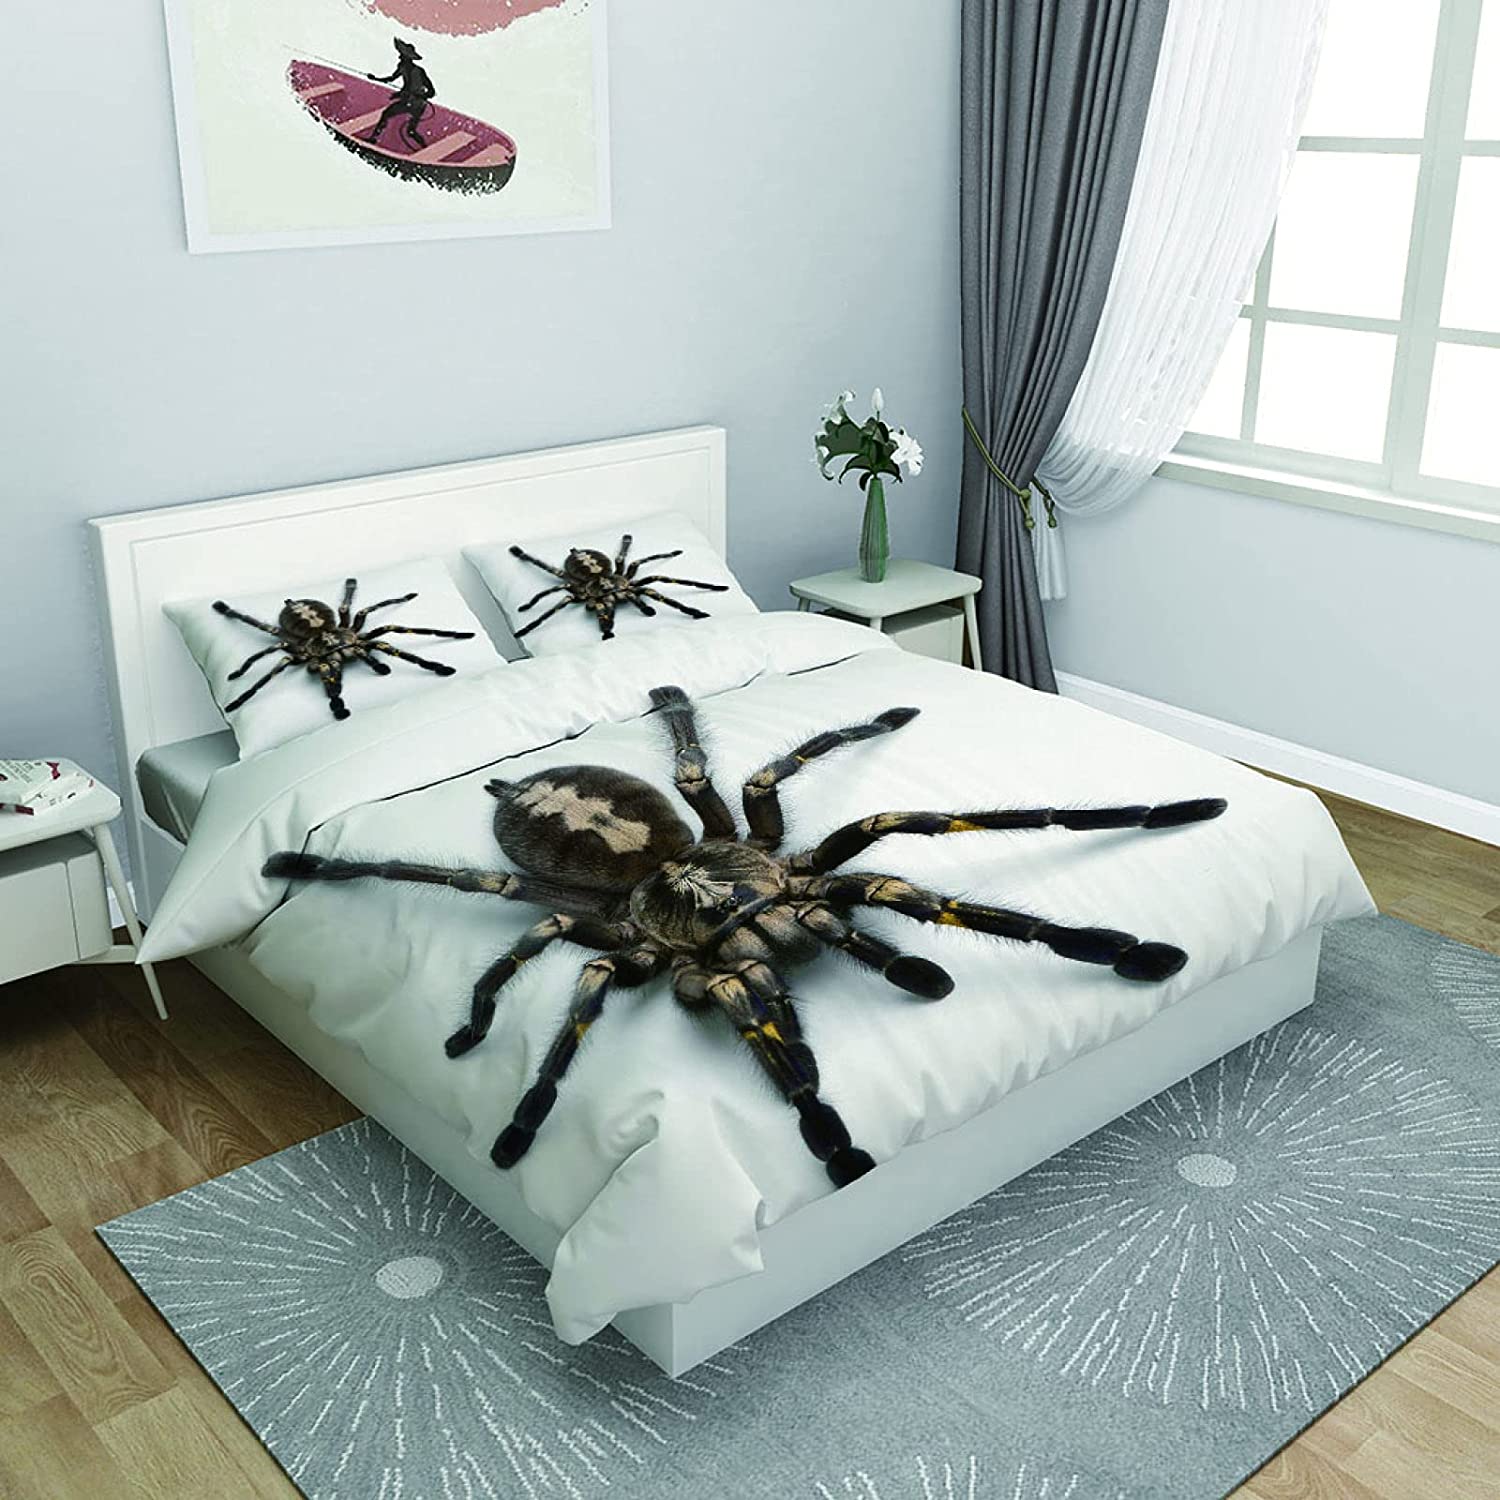 Creepy Scary Giant Tarantula Bed Set Sheets